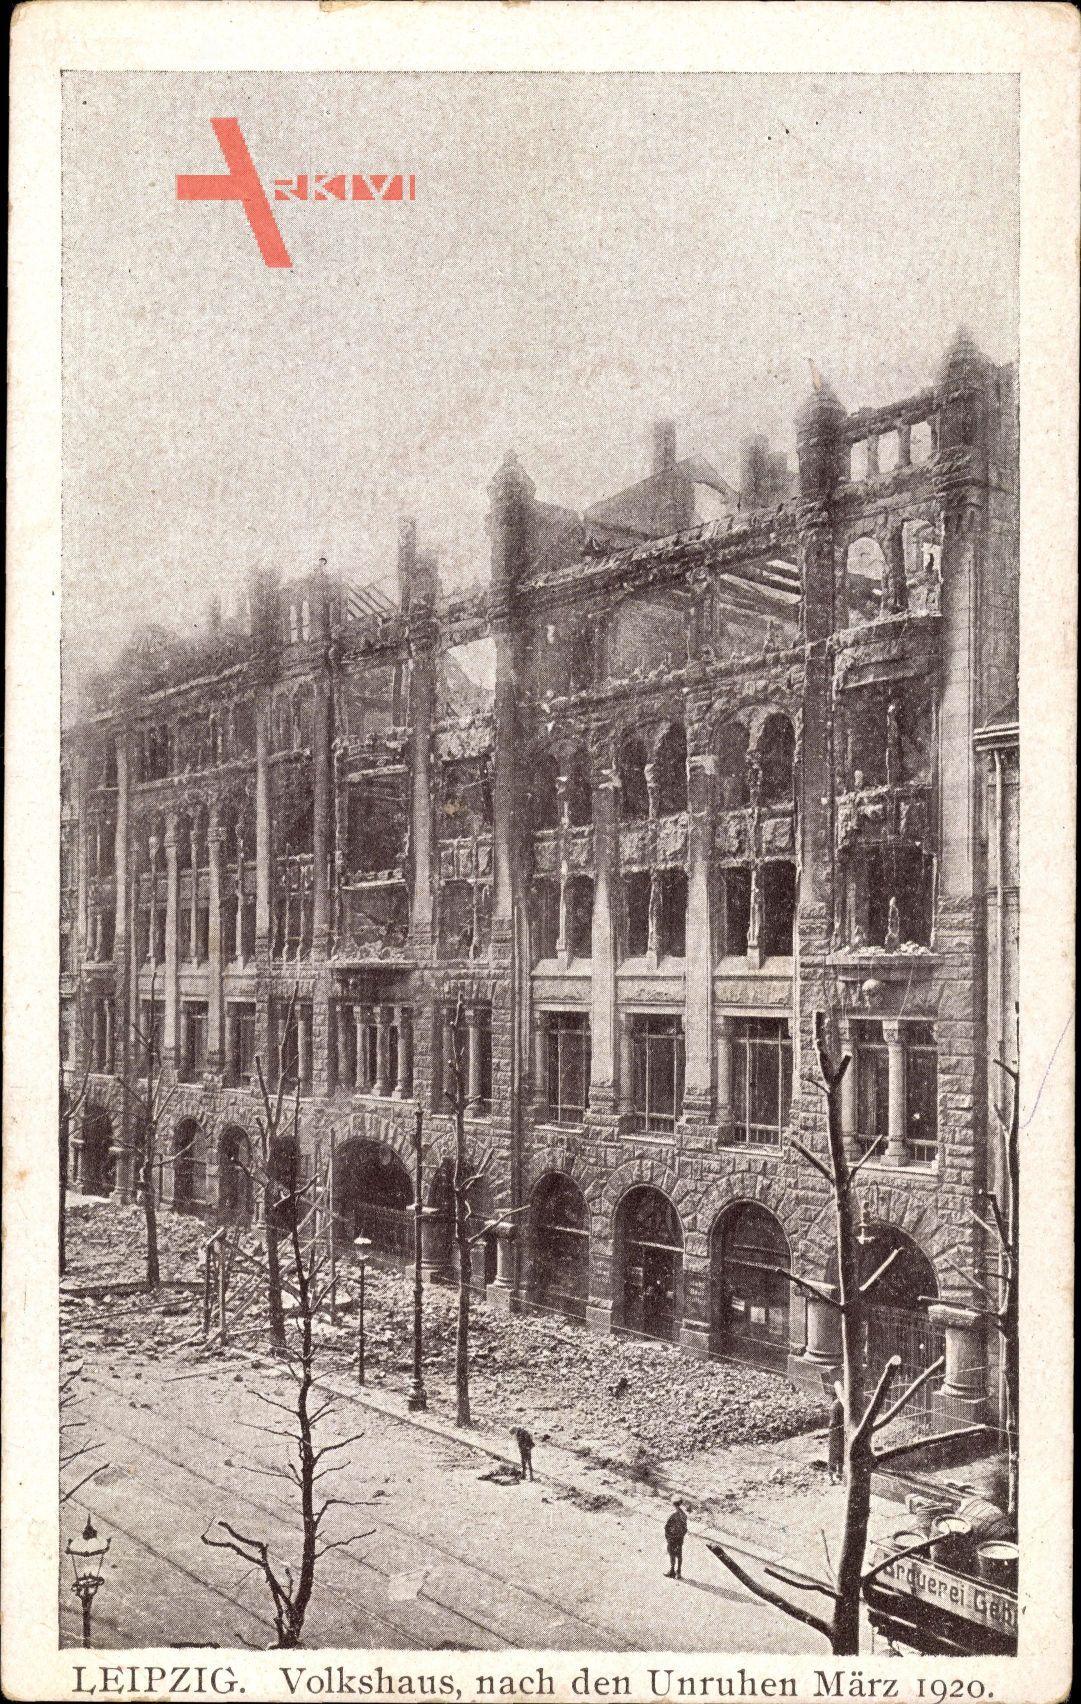 Leipzig in Sachsen, Blick auf das Volkshaus nach den Unruhen März 1920